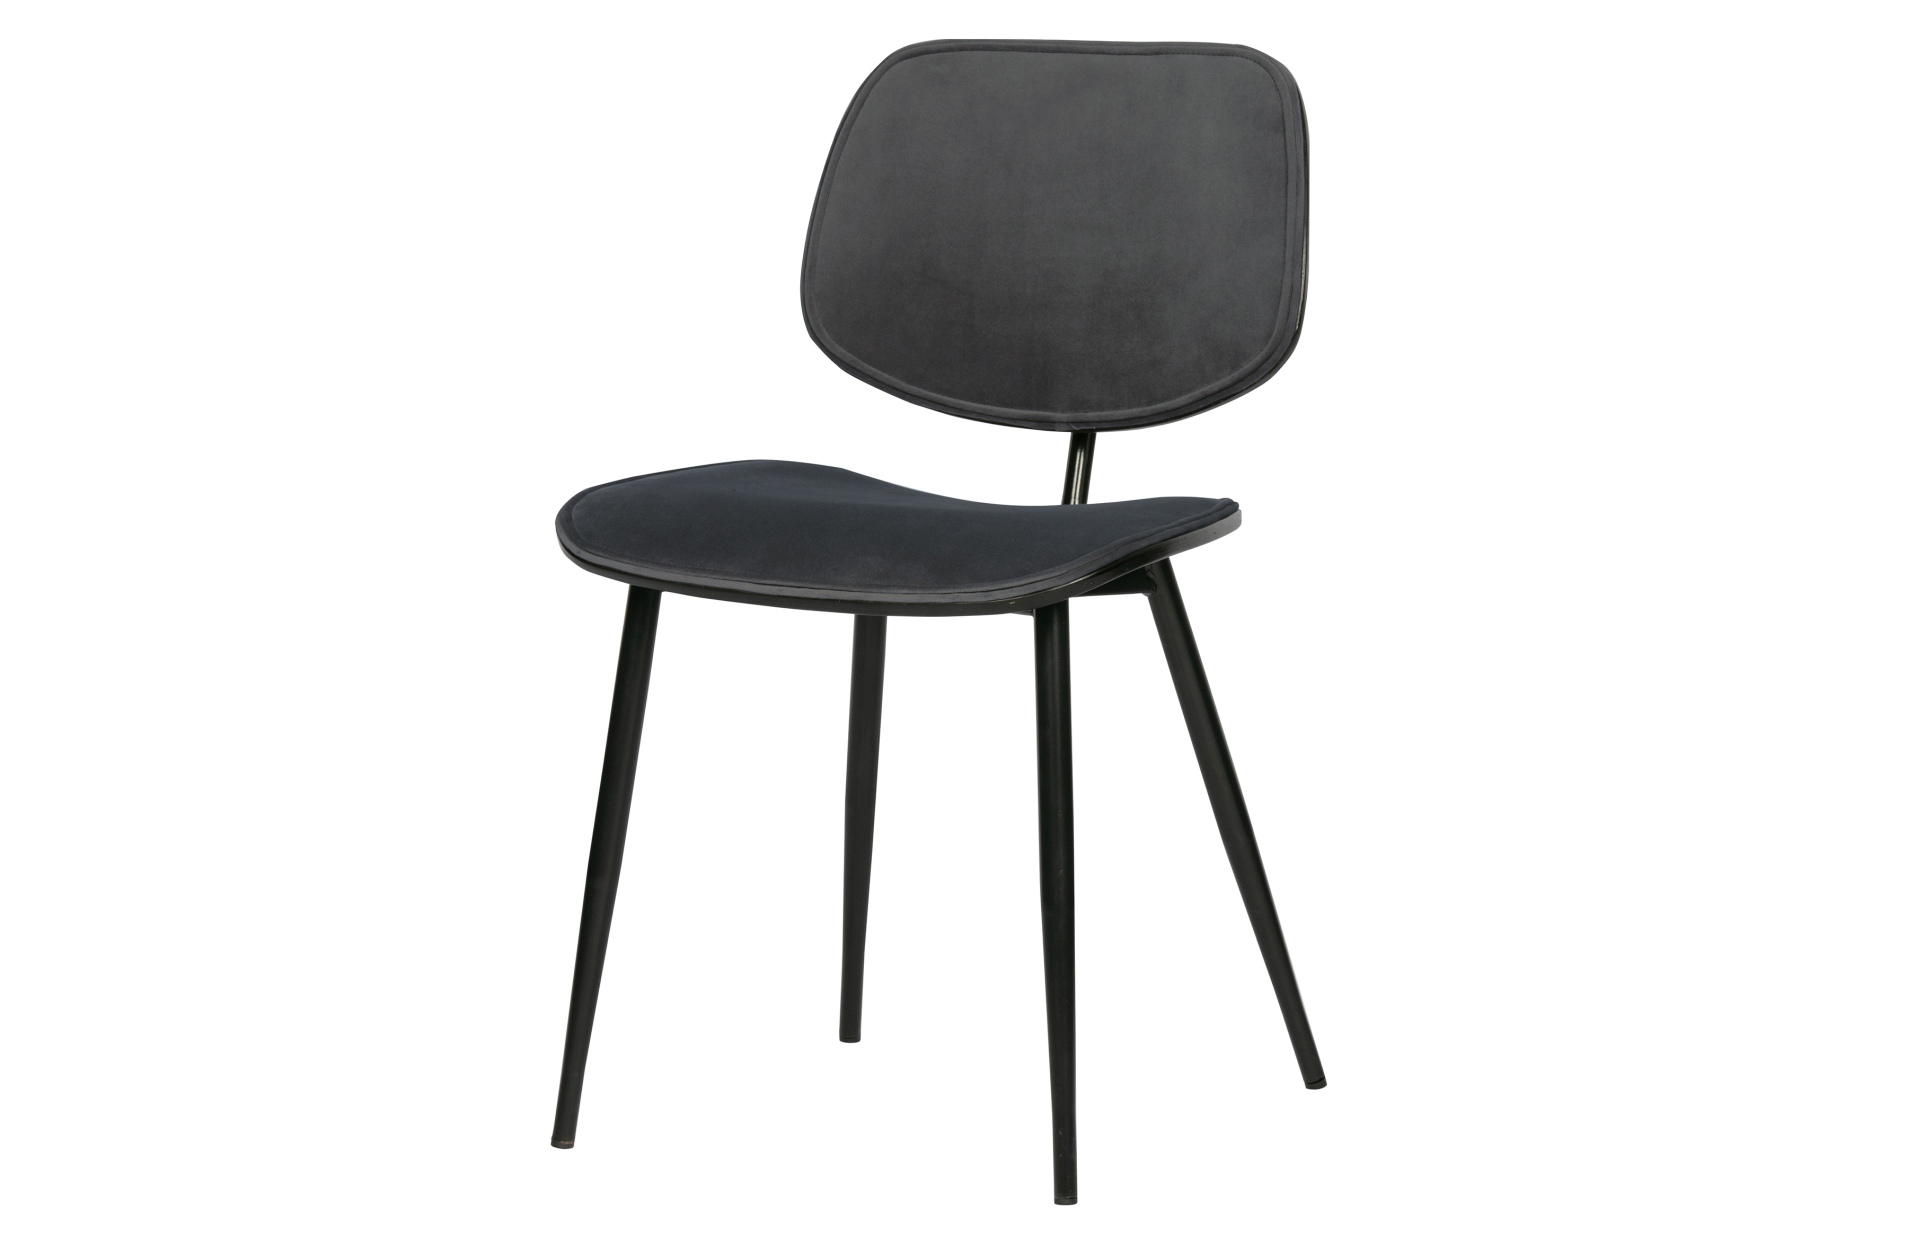 Der Esszimmerstuhl Jackie überzeugt mit seinem modernen Design. Gefertigt wurde er aus Samt, welches einen grauen Farbton besitzt. Das Gestell ist aus Metall und hat eine schwarze Farbe. Der Stuhl verfügt über eine Sitzhöhe von 47 cm.